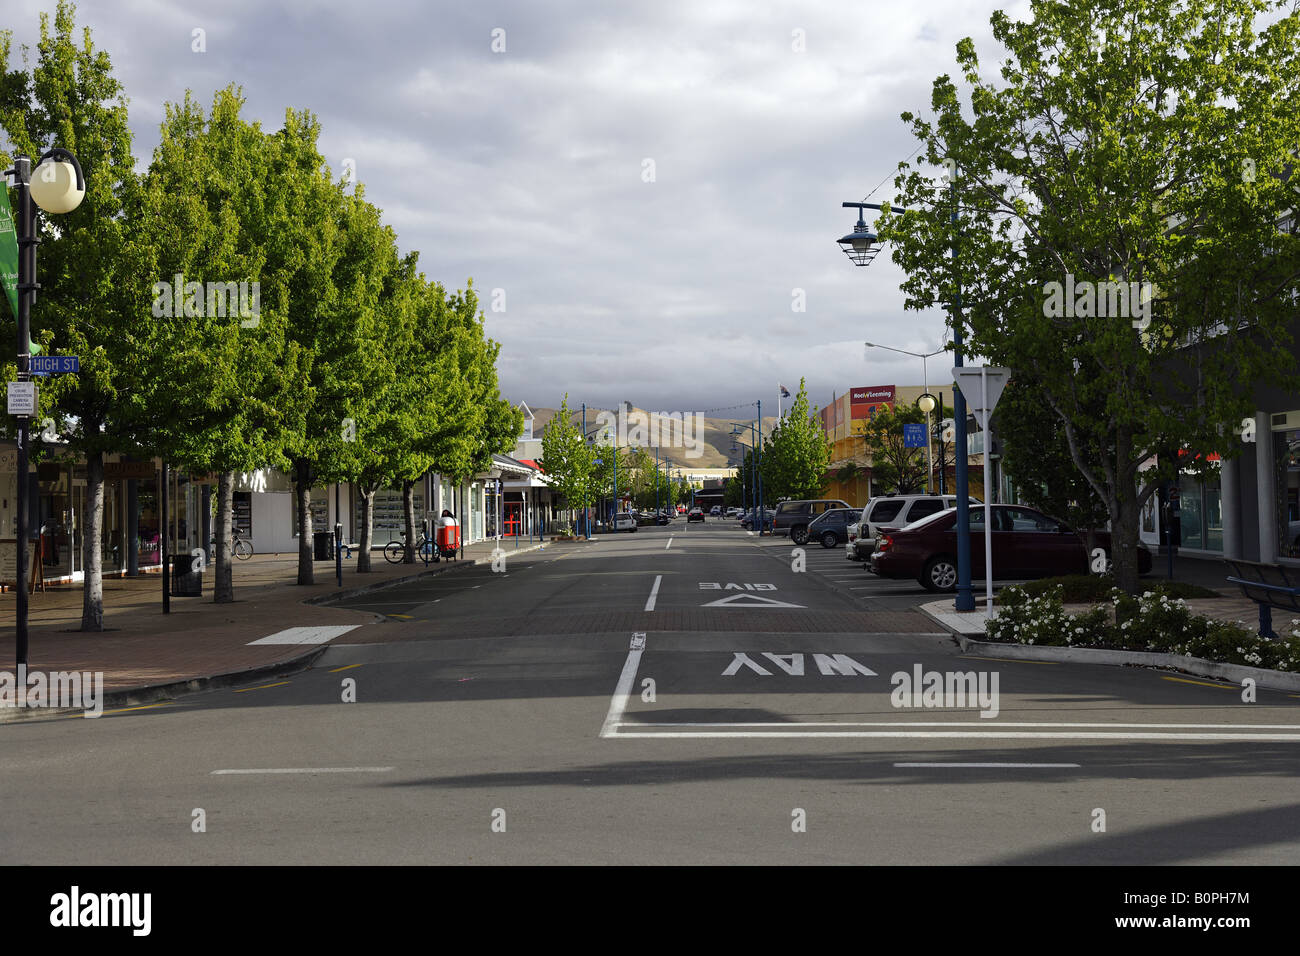 Queen Street in Blenheim town high street, New Zealand Stock Photo